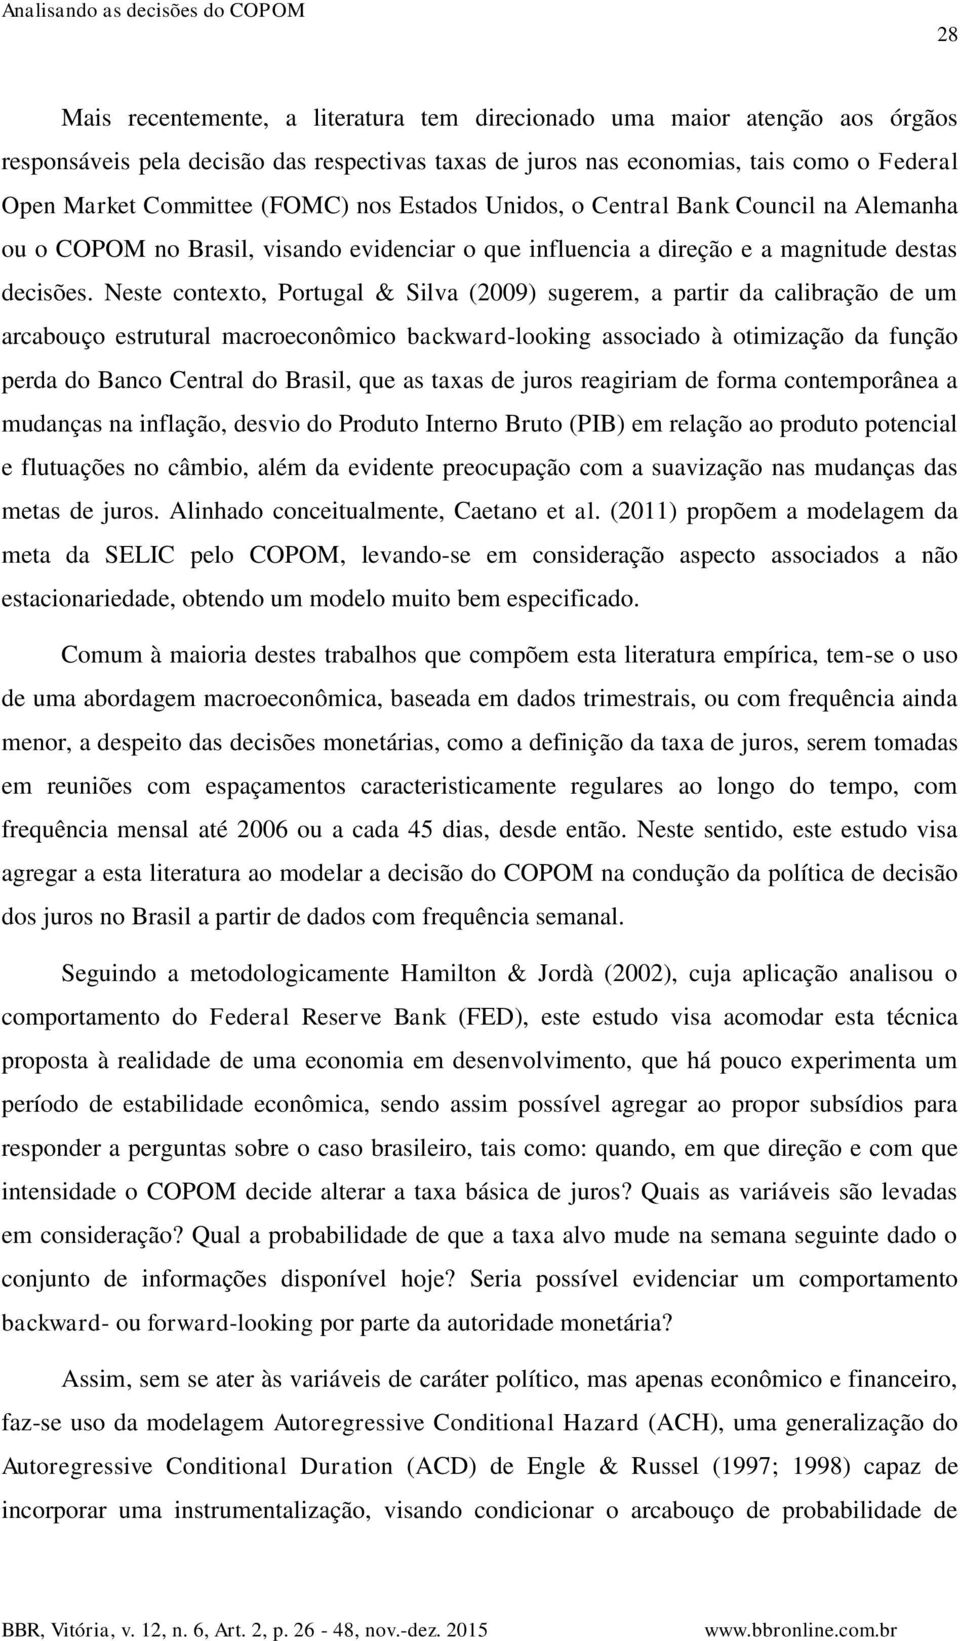 Neste contexto, Portugal & Silva (2009) sugerem, a partir da calibração de um arcabouço estrutural macroeconômico backward-looking associado à otimização da função perda do Banco Central do Brasil,